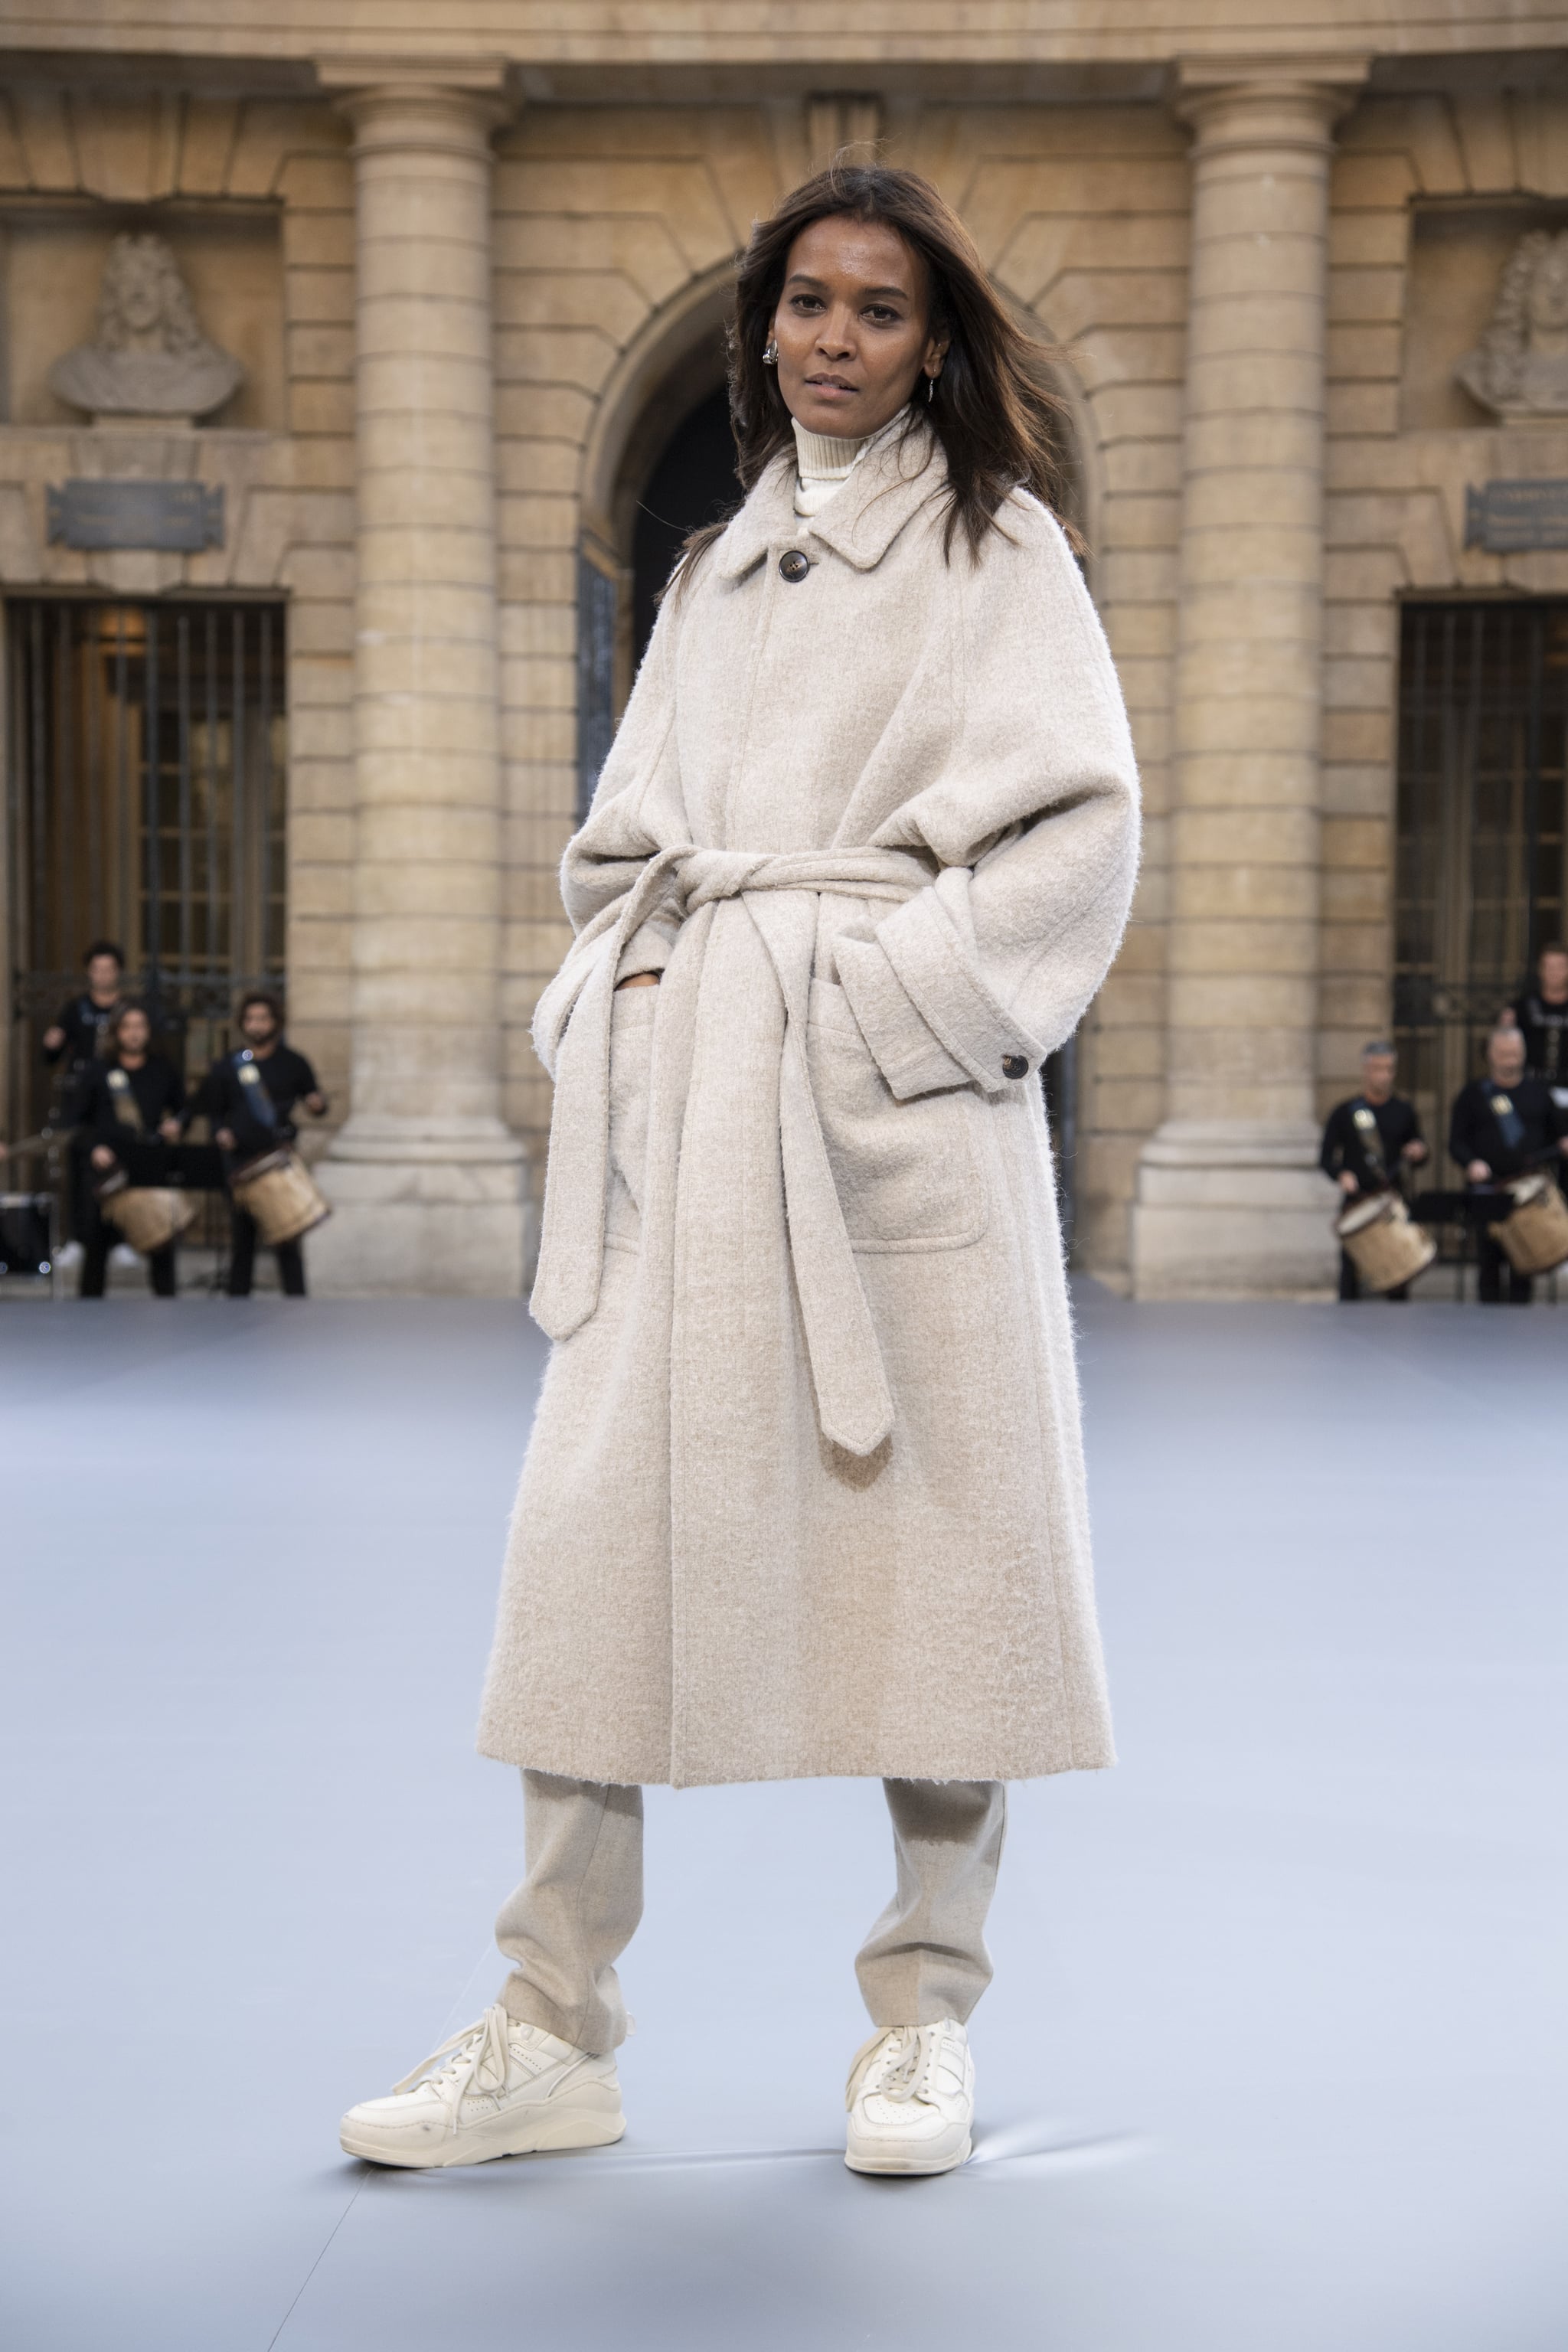 Liya Kebede Walks Le Défilé L'Oréal Paris 2019